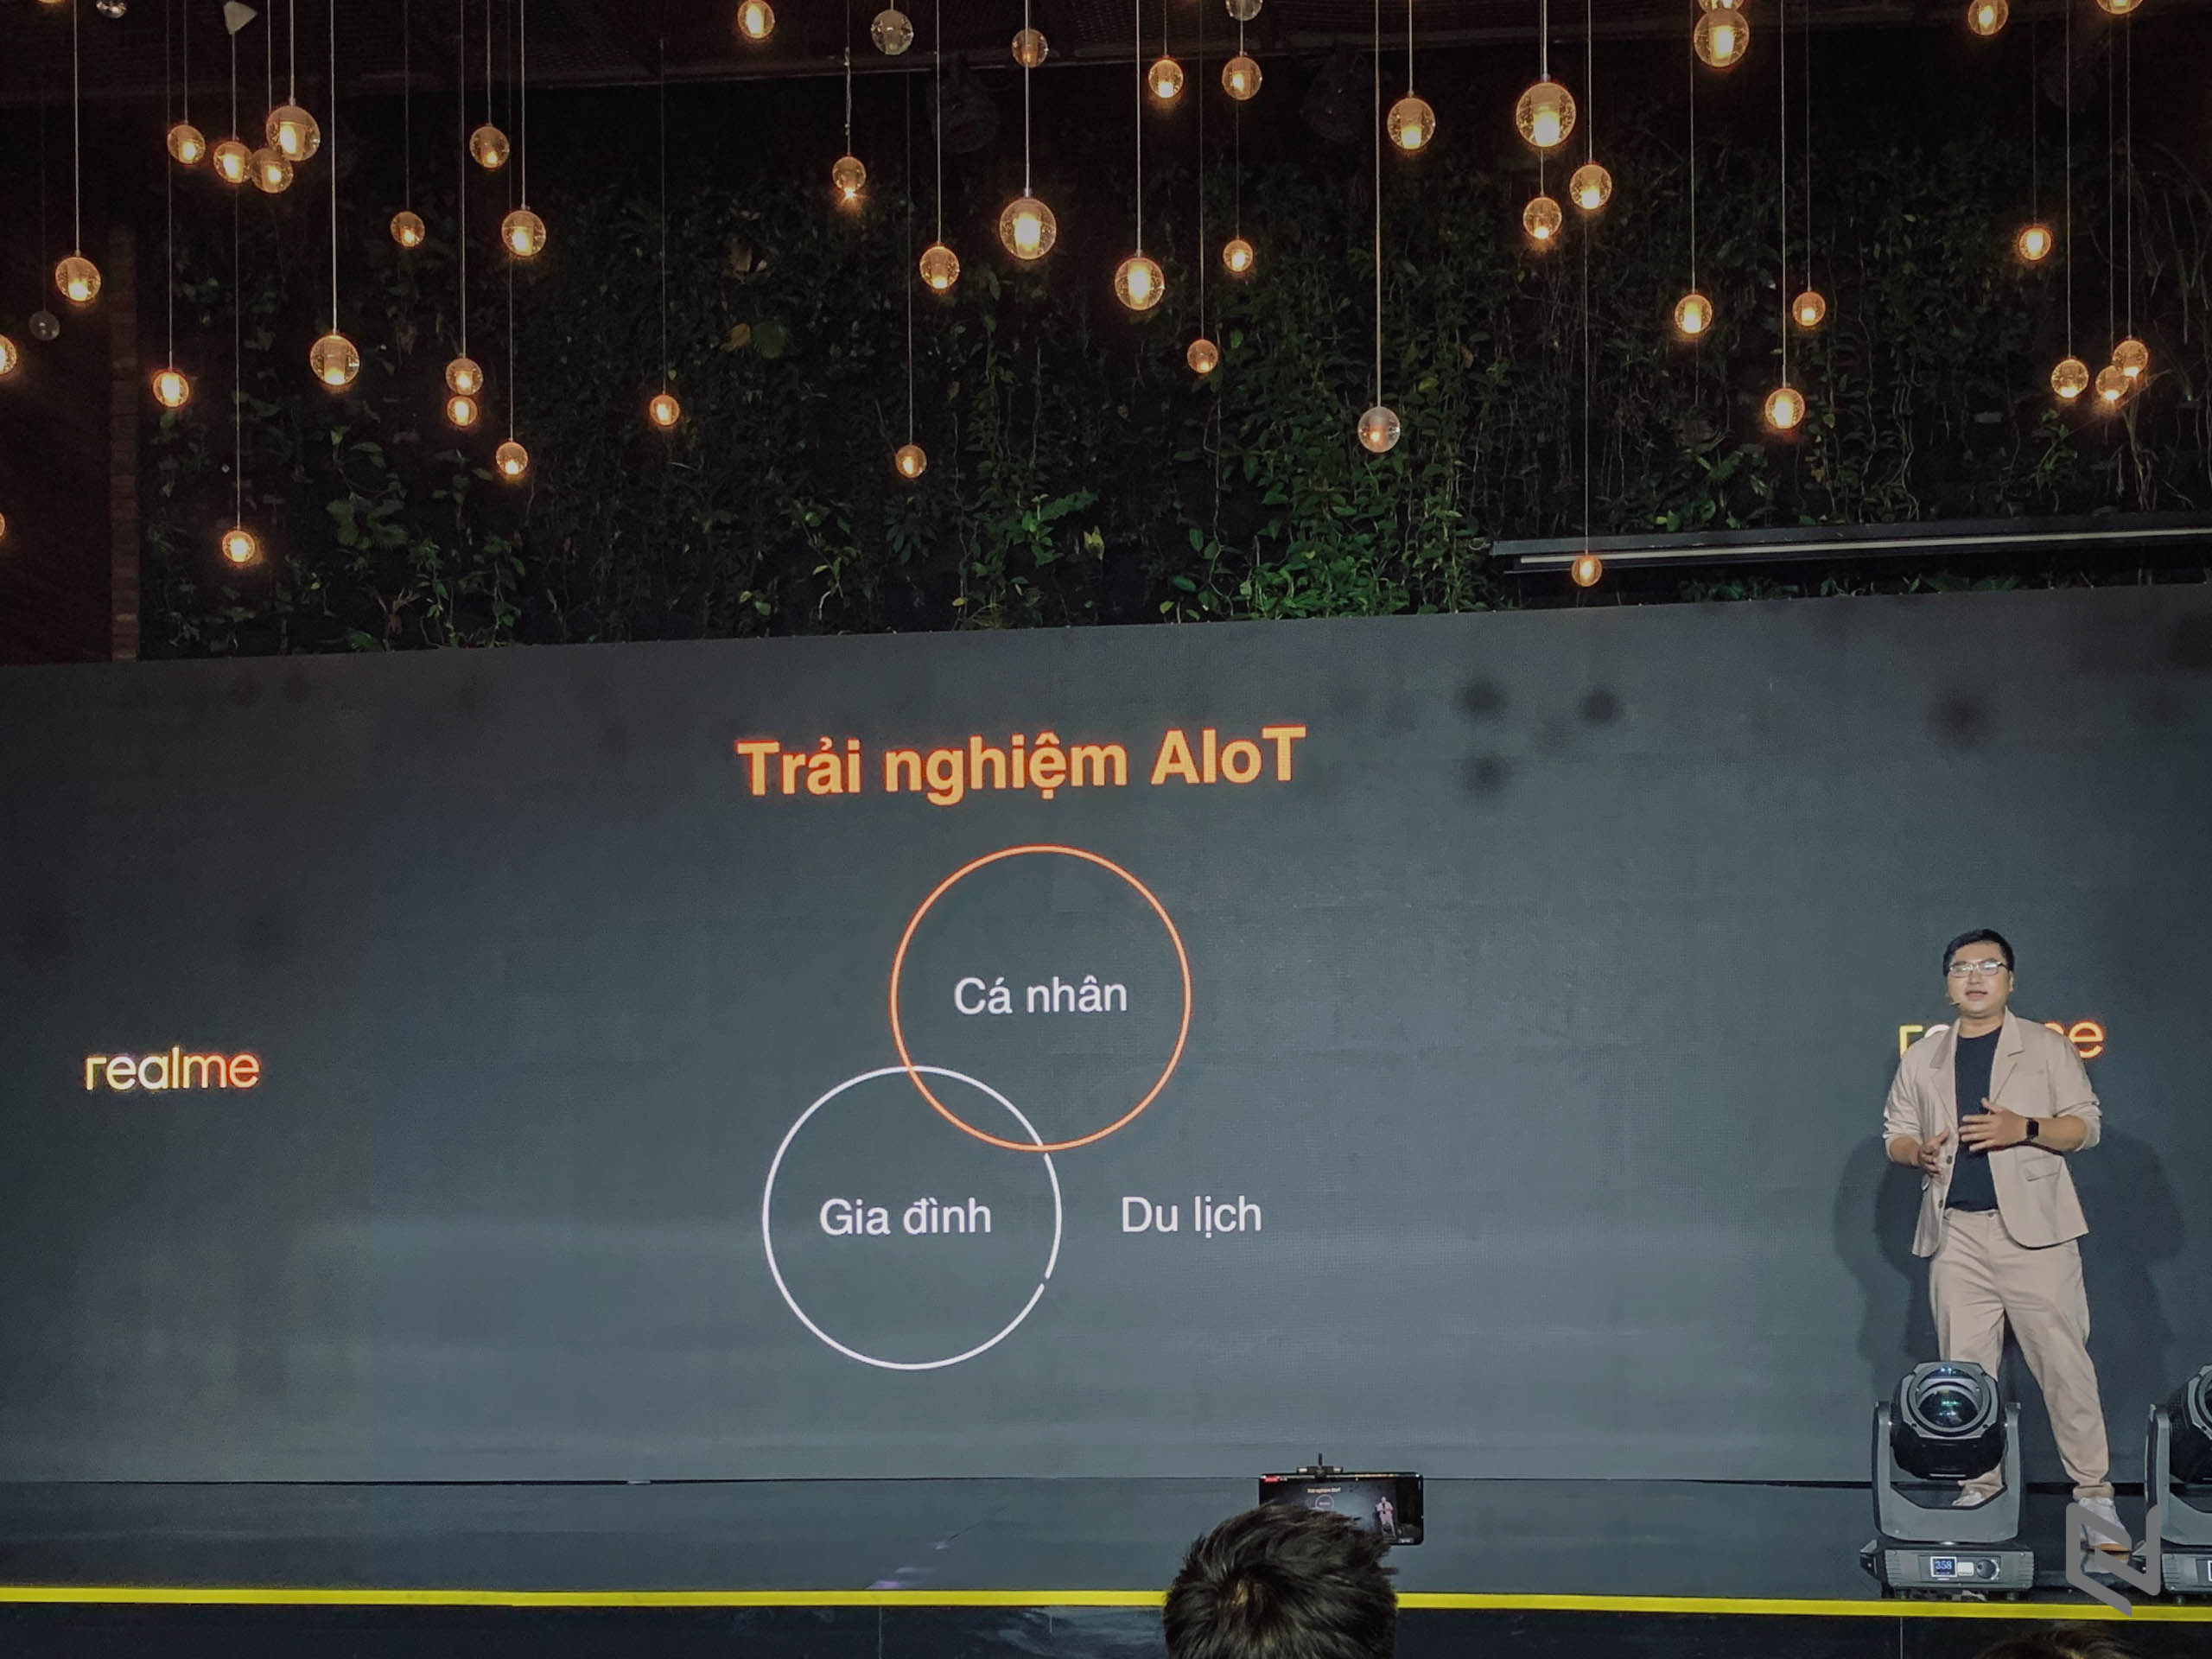 Realme ra mắt hệ sinh thái sản phẩm AIoT và công bố giá bán Realme C11 tại Việt Nam